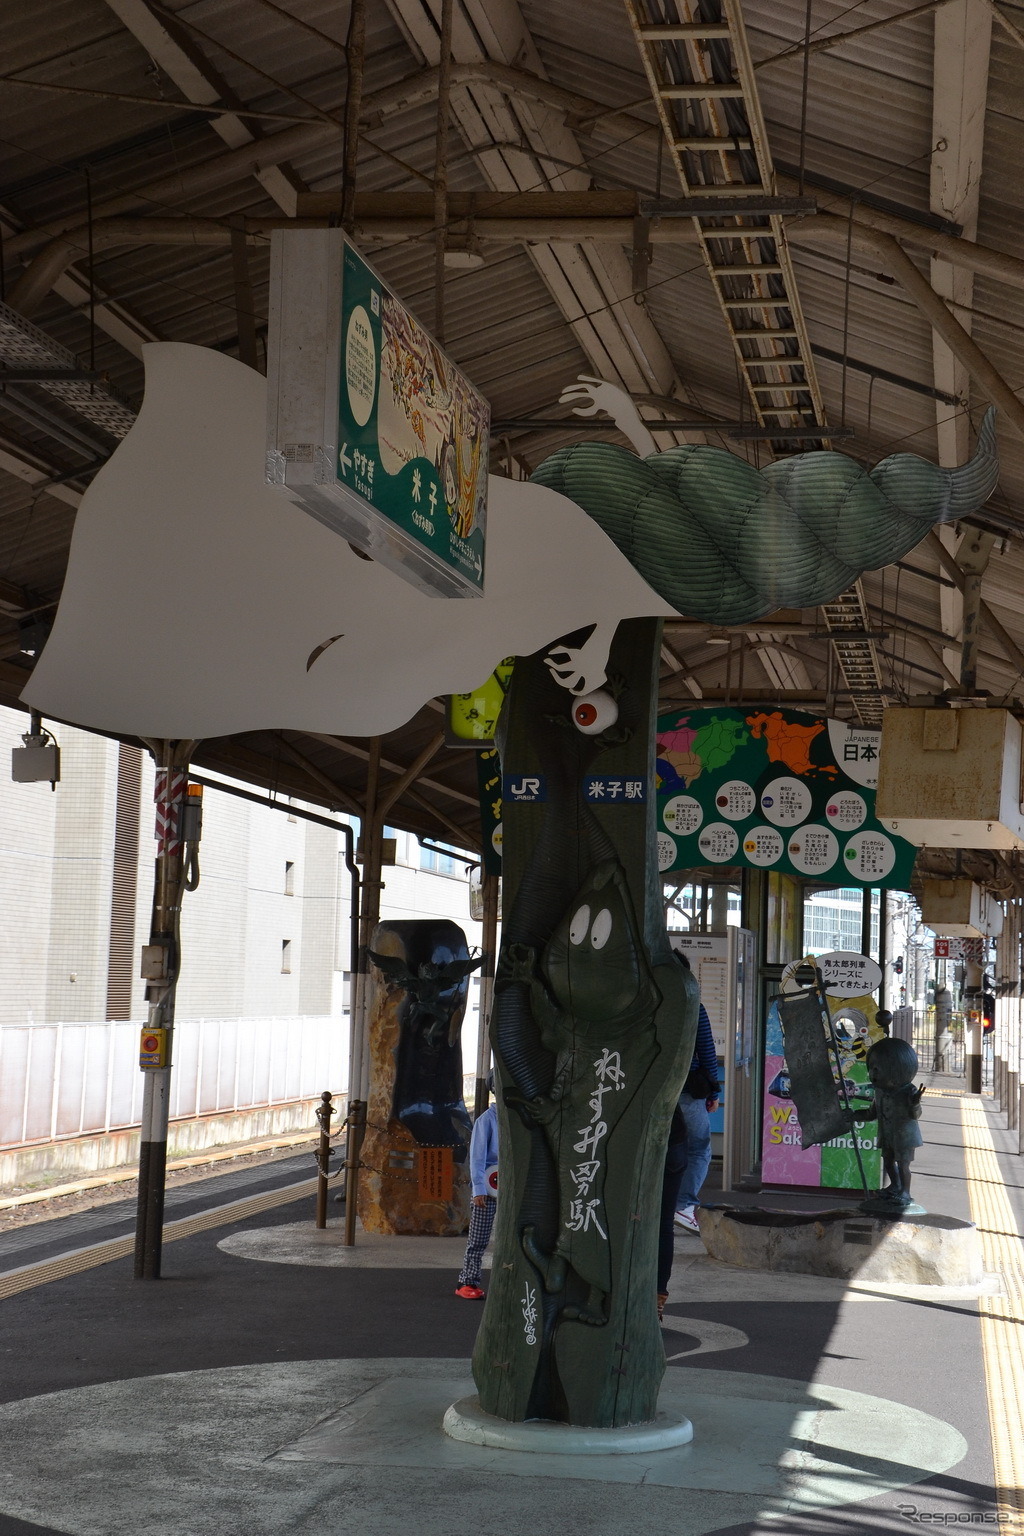 米子駅は「ねずみ男駅」。上に一反木綿が飛んでいる。